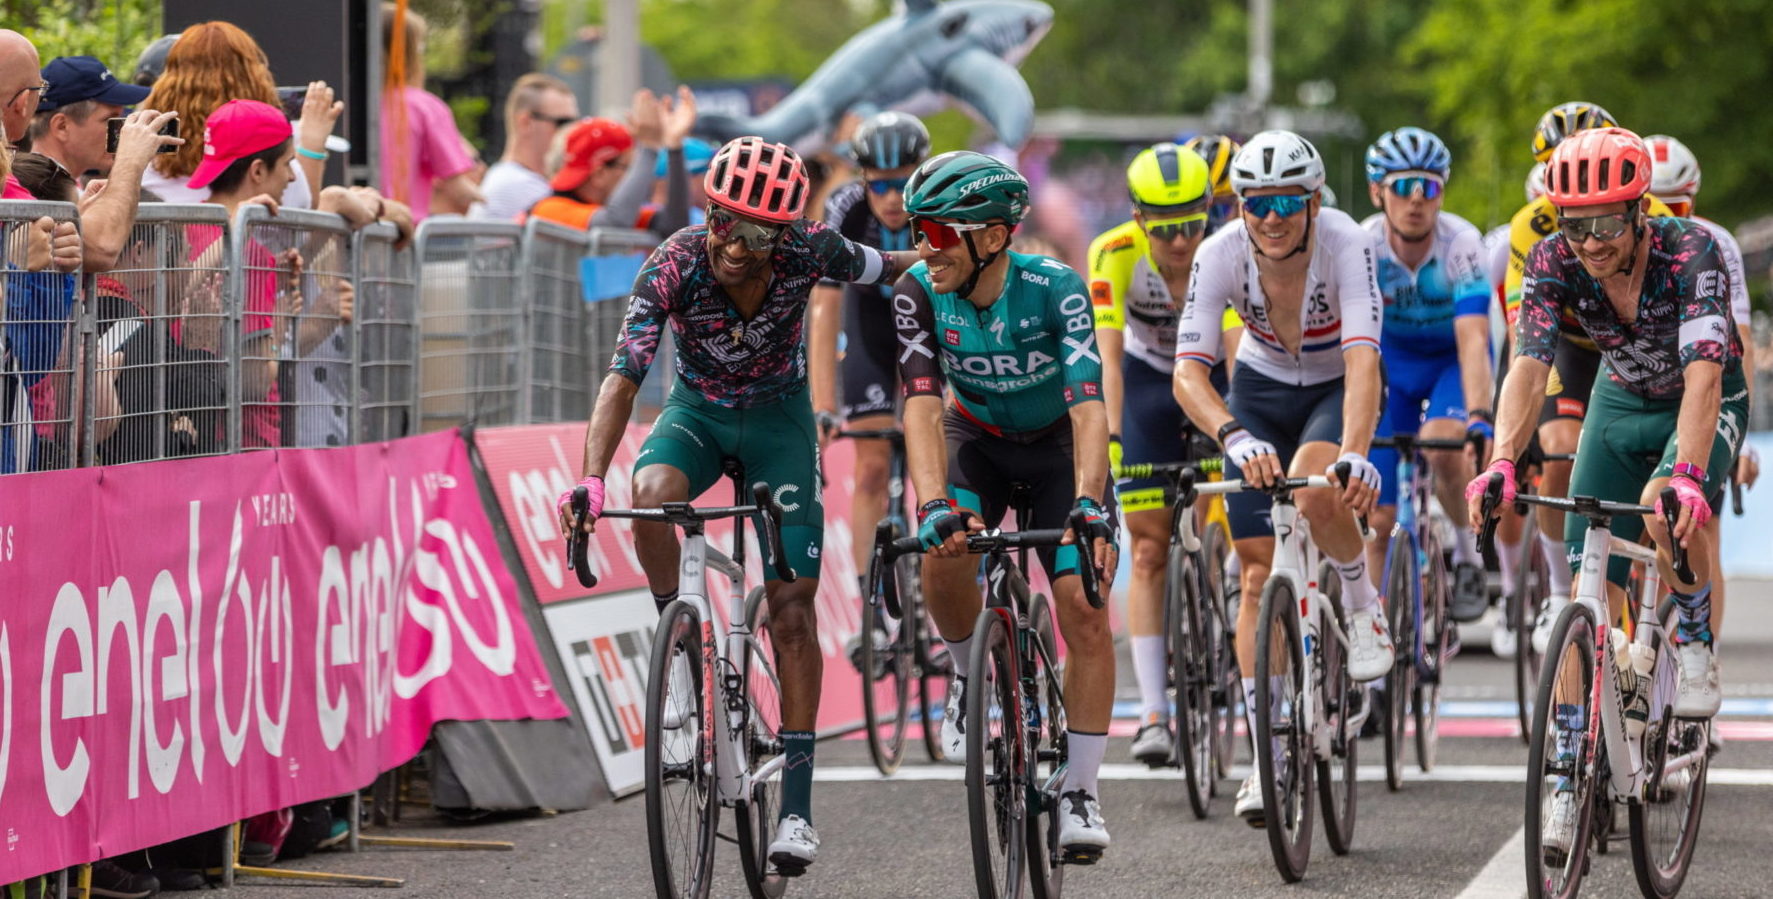 Visegrád, 2022. május 6. A Giro d'Italia országúti kerékpáros körverseny Budapest és Visegrád közötti 195 kilométeres nyitóetap befutója Visegrádon 2022. május 6-án. Ez az elsõ alkalom, hogy Magyarországot érinti a háromhetes körverseny, a Giro 14. alkalommal rajtol Olaszországon kívül.